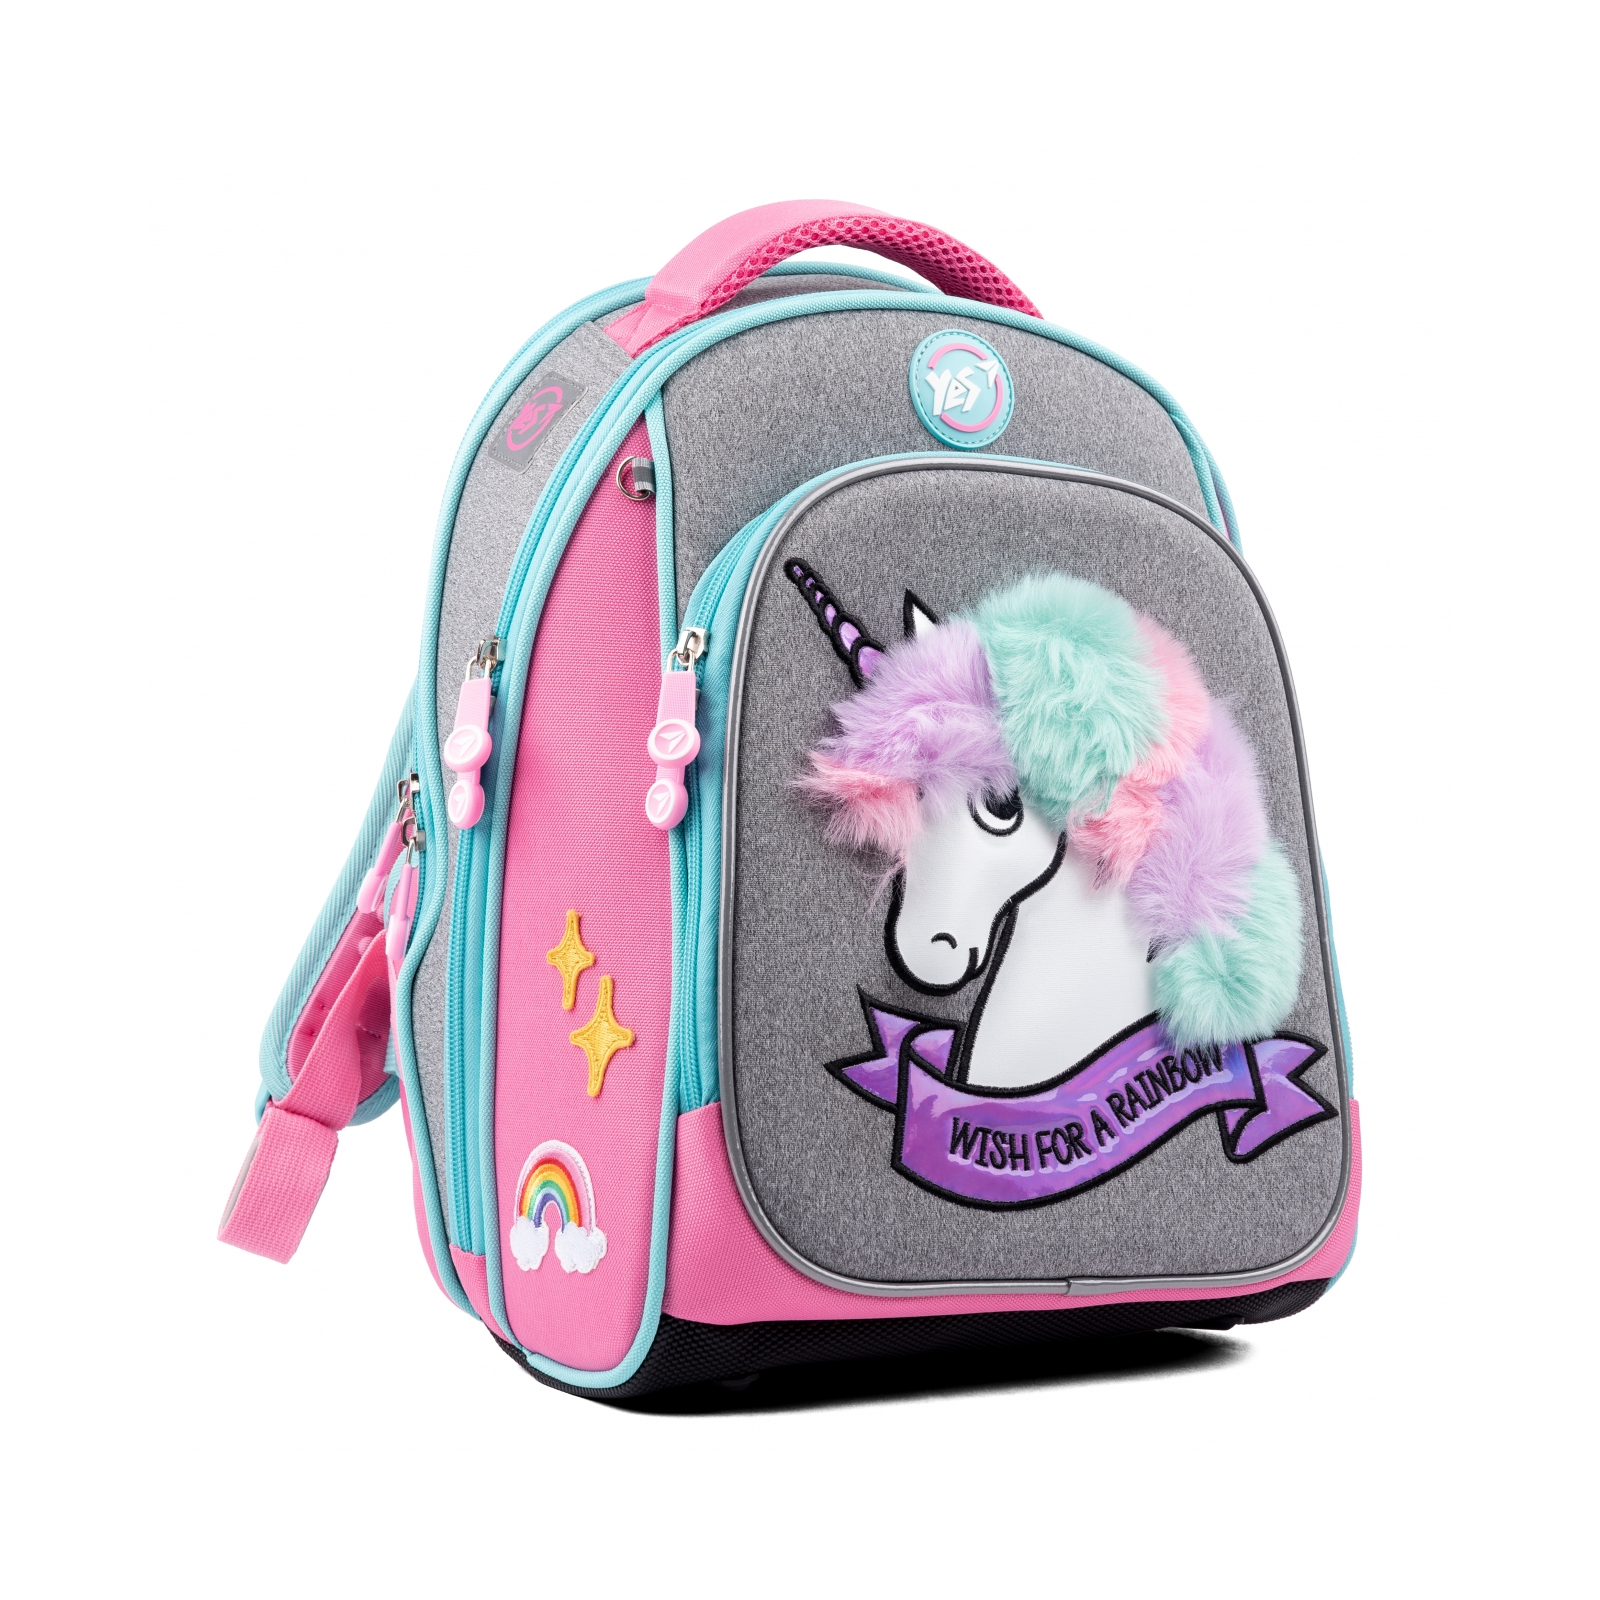 Рюкзак шкільний Yes S-89 Unicorn (554096)